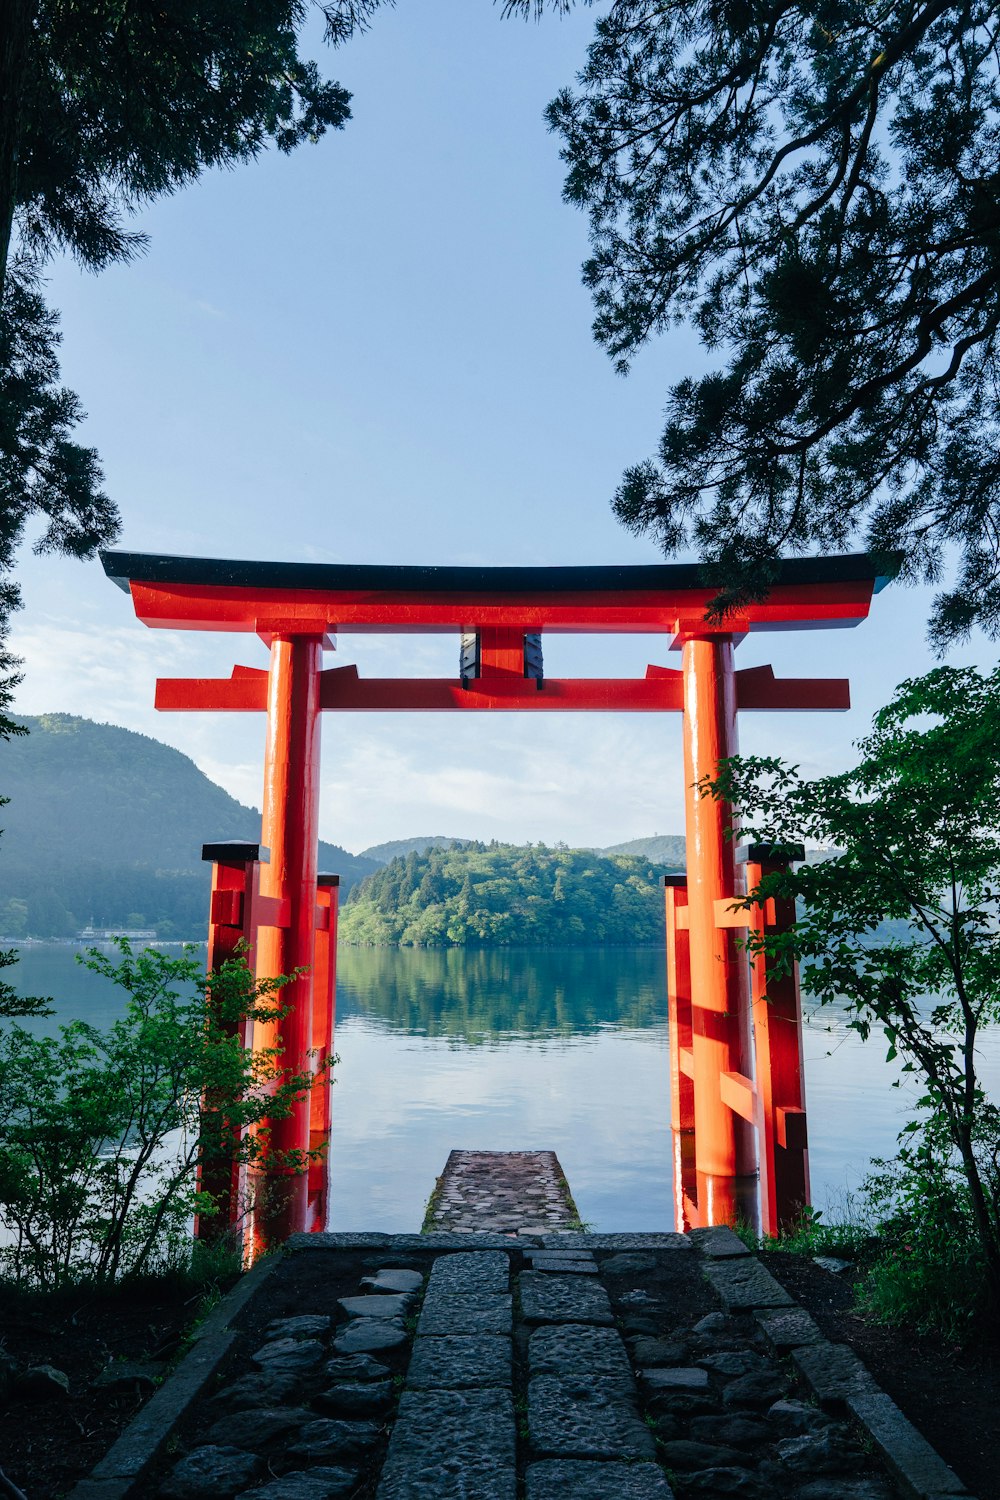 Arco de madera rojo cerca del lago durante el día